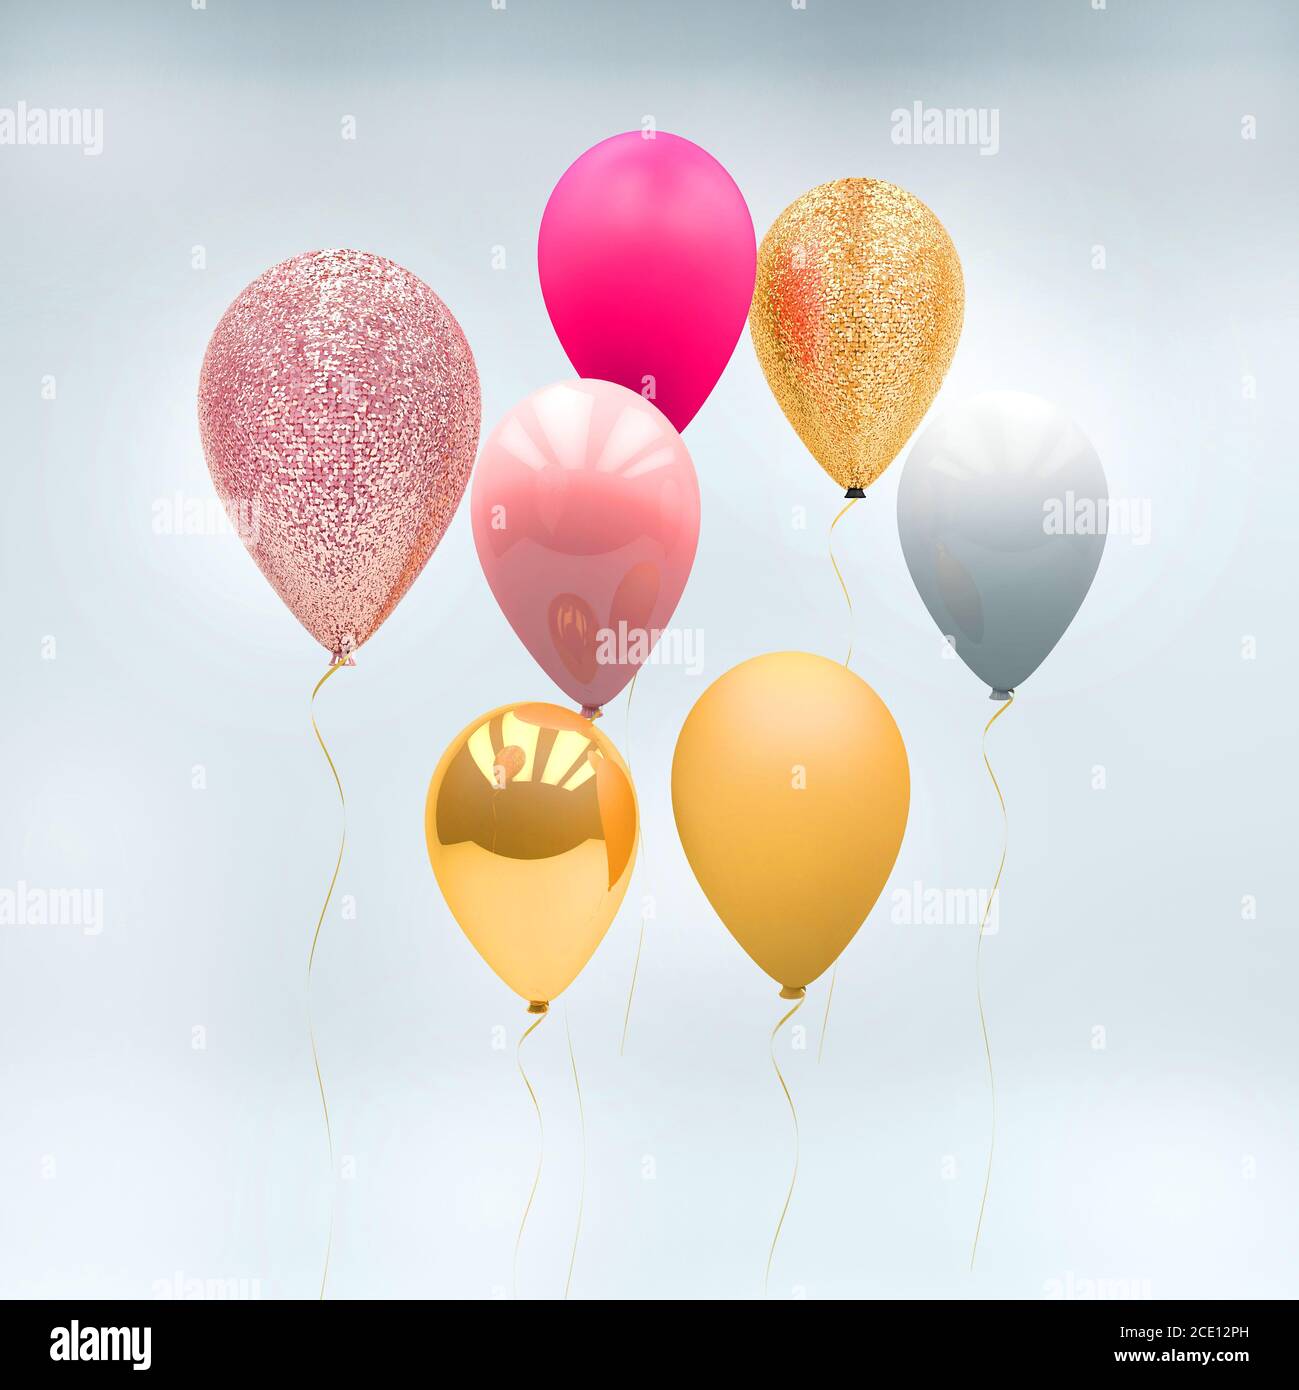 rendu 3d d'une montgolfière rose, argentée, dorée et blanche métallisée et scintillante sur un fond dégradé blanc et gris Banque D'Images